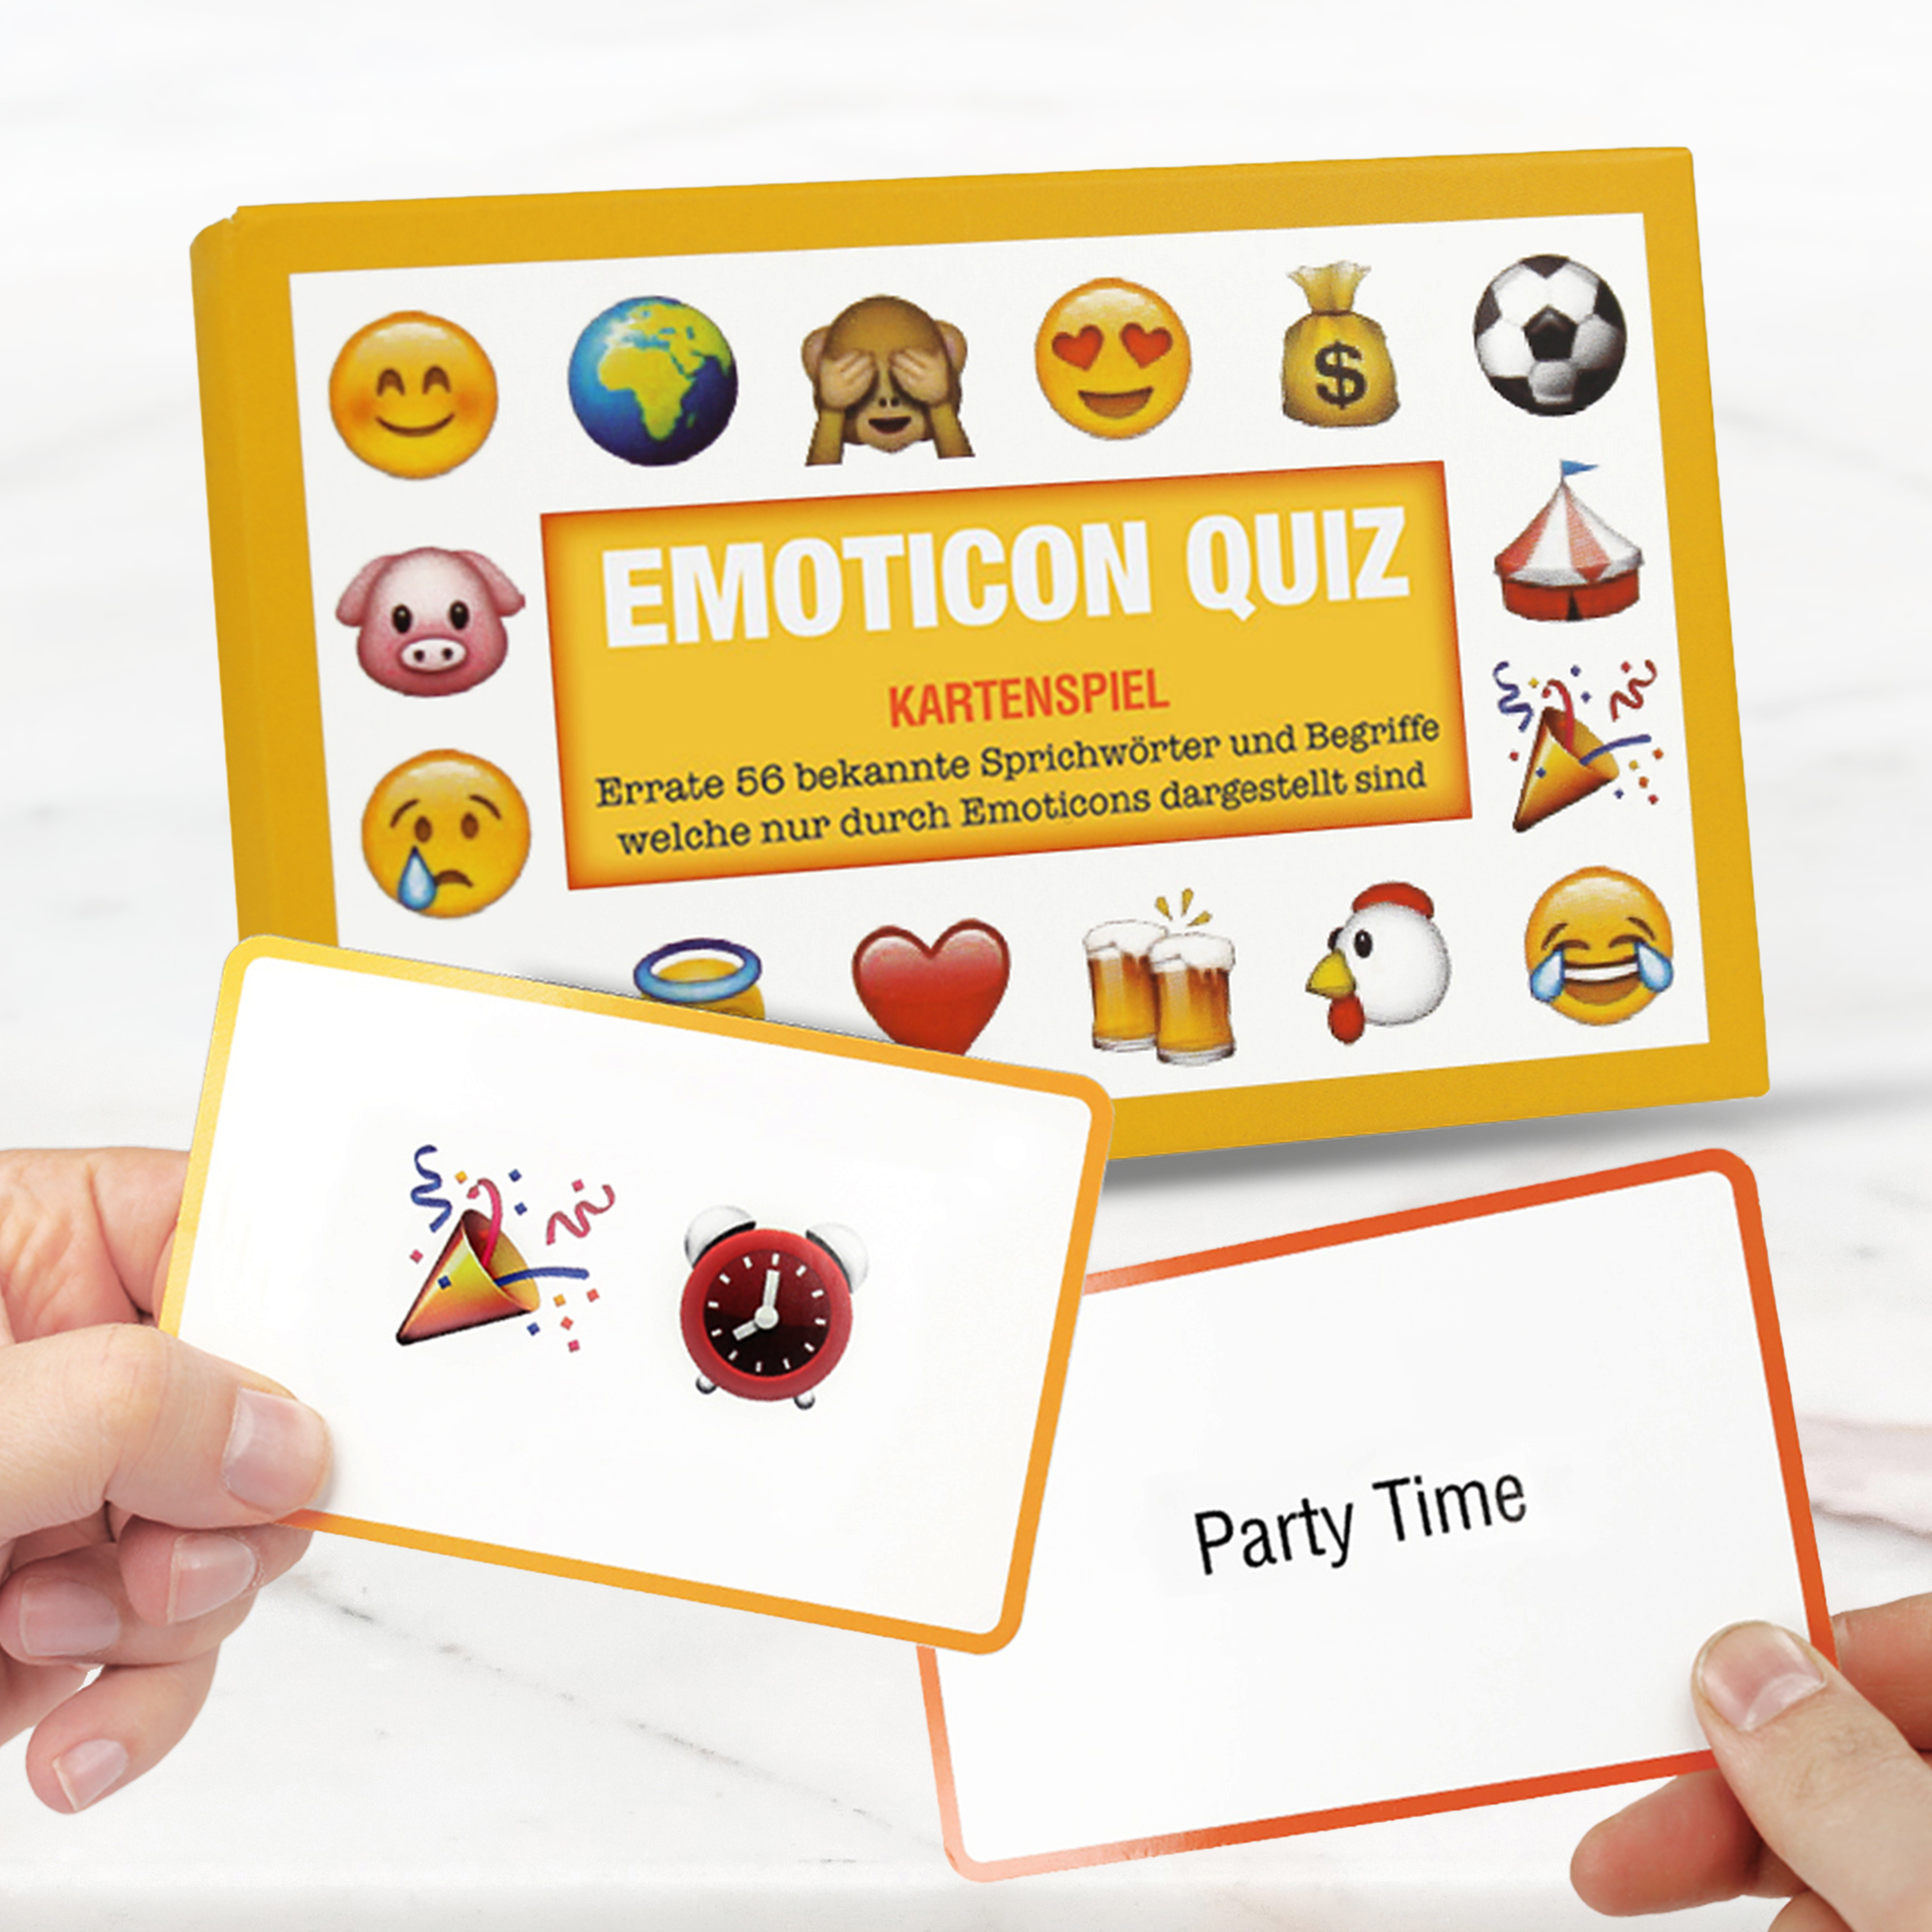 Emoticon Quiz - Kartenspiel 3551